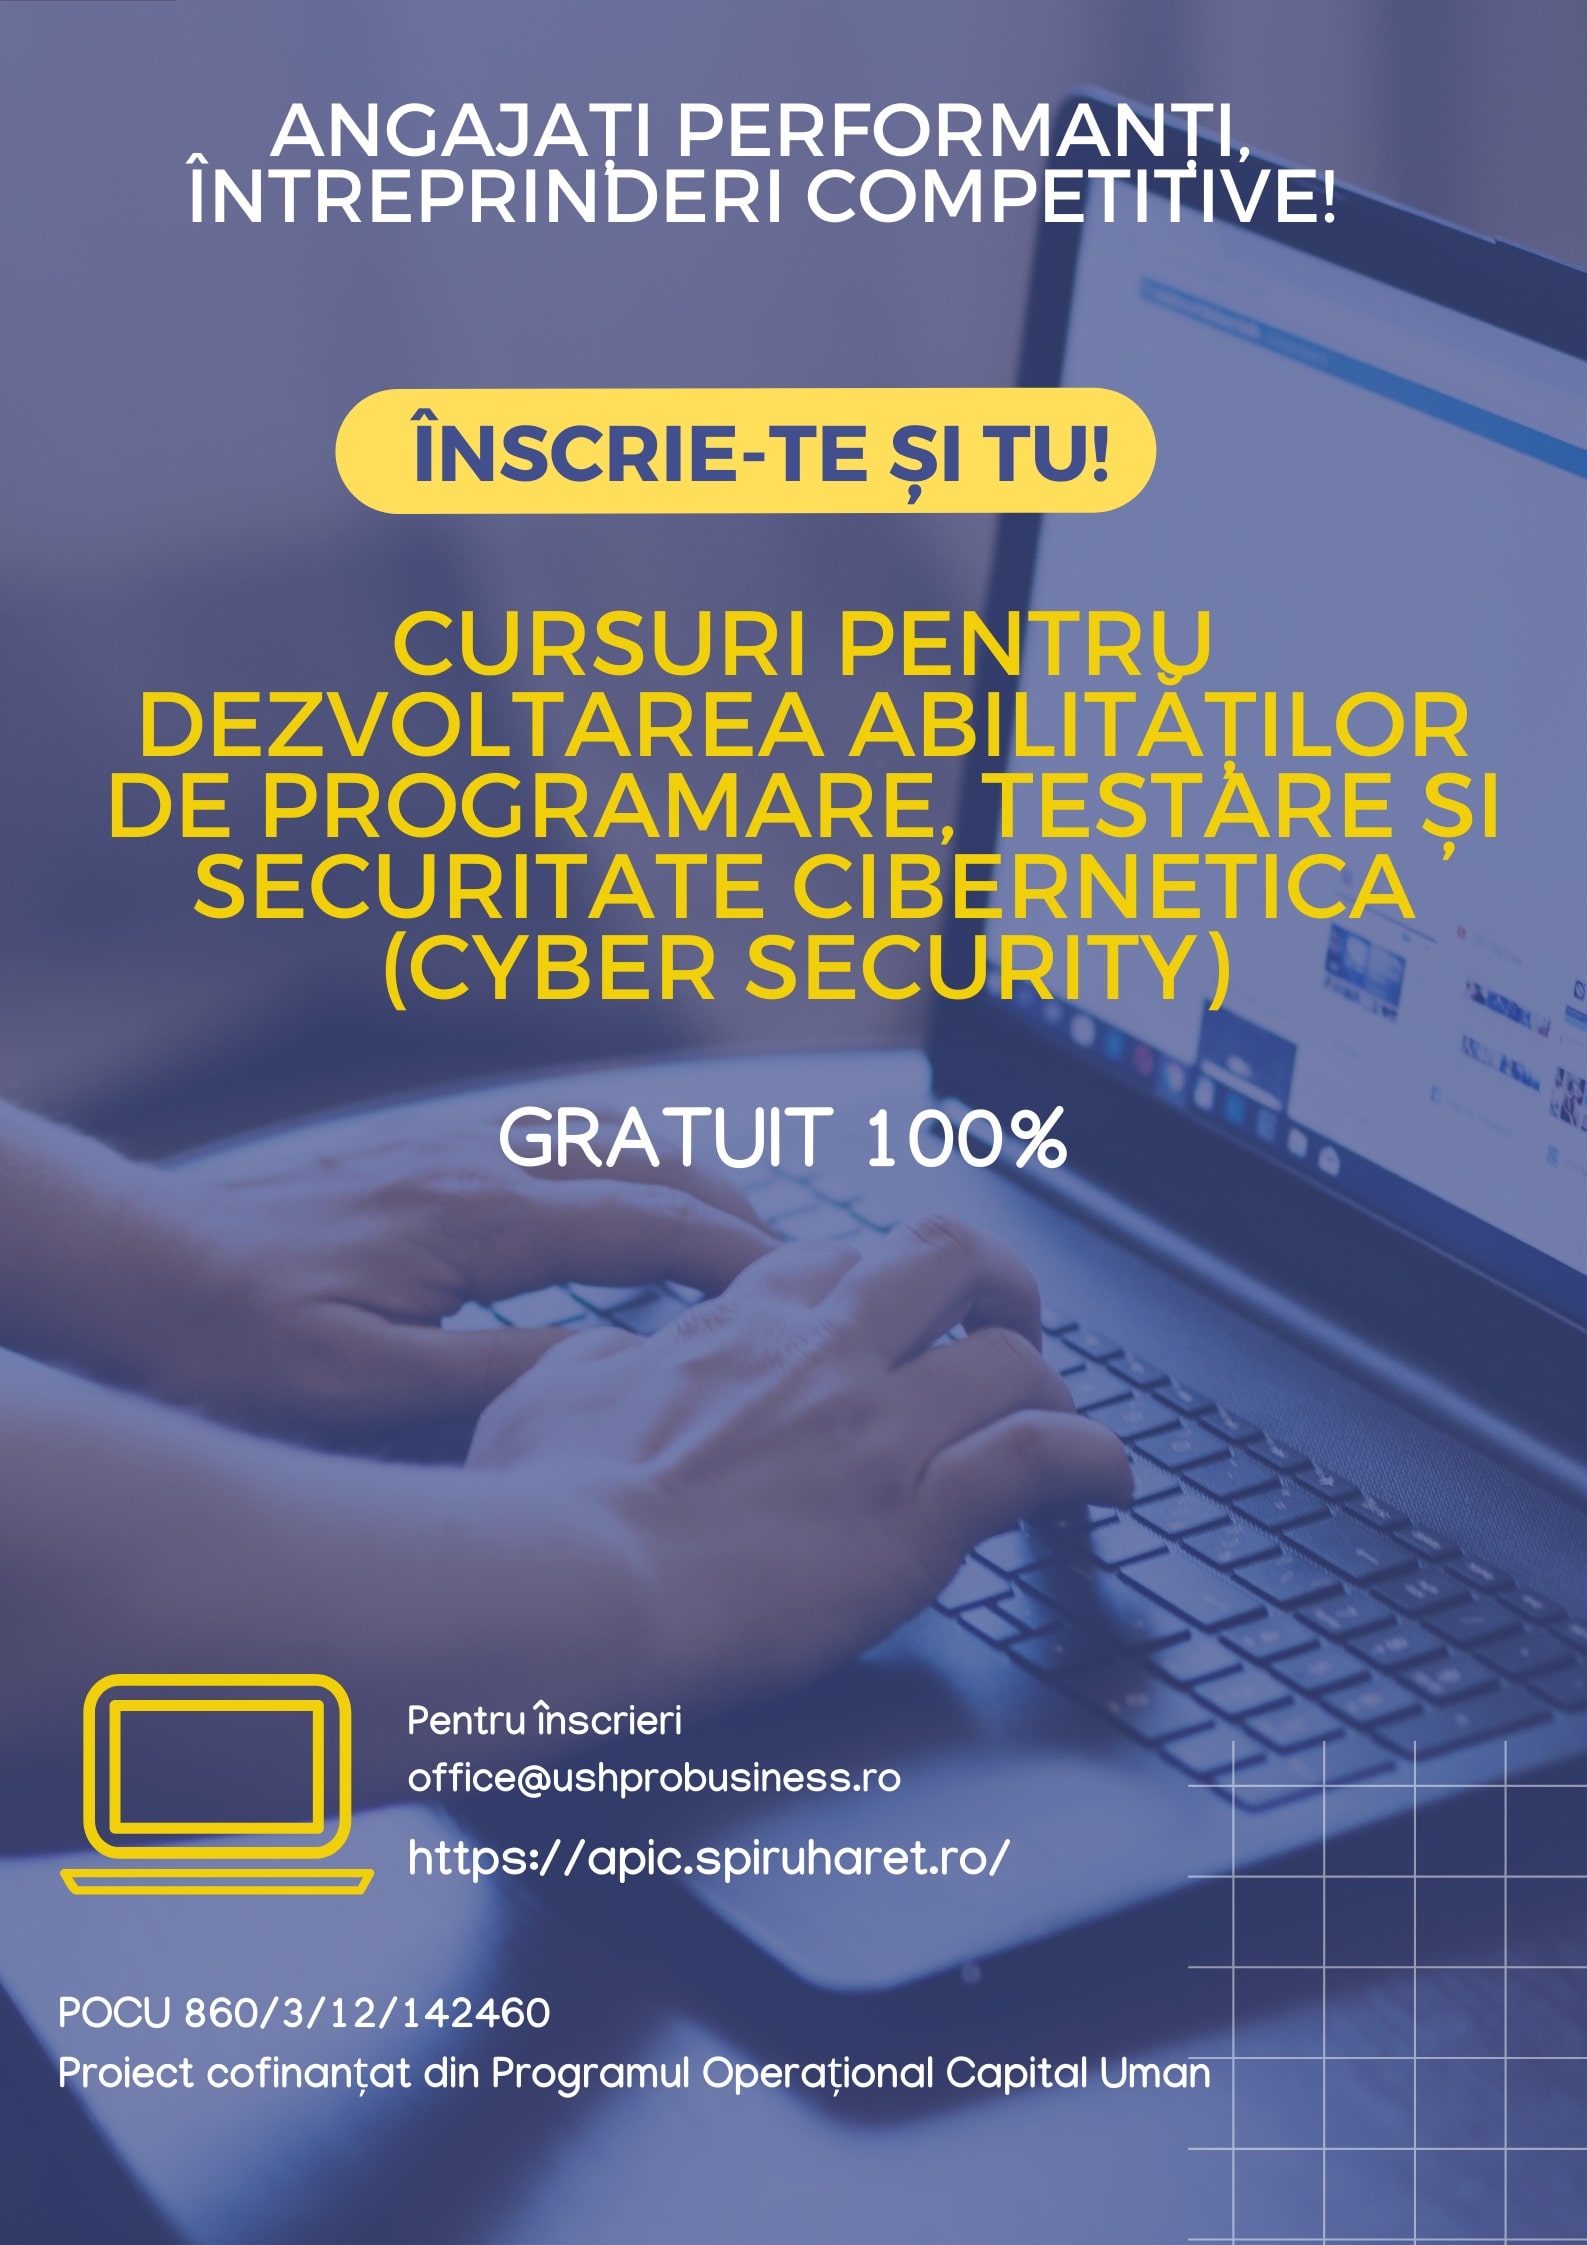 You are currently viewing CURSURI PENTRU DEZVOLTAREA ABILITĂȚILOR DE PROGRAMARE, TESTARE ȘI SECURITATE CIBERNETICĂ (CYBER SECURITY)